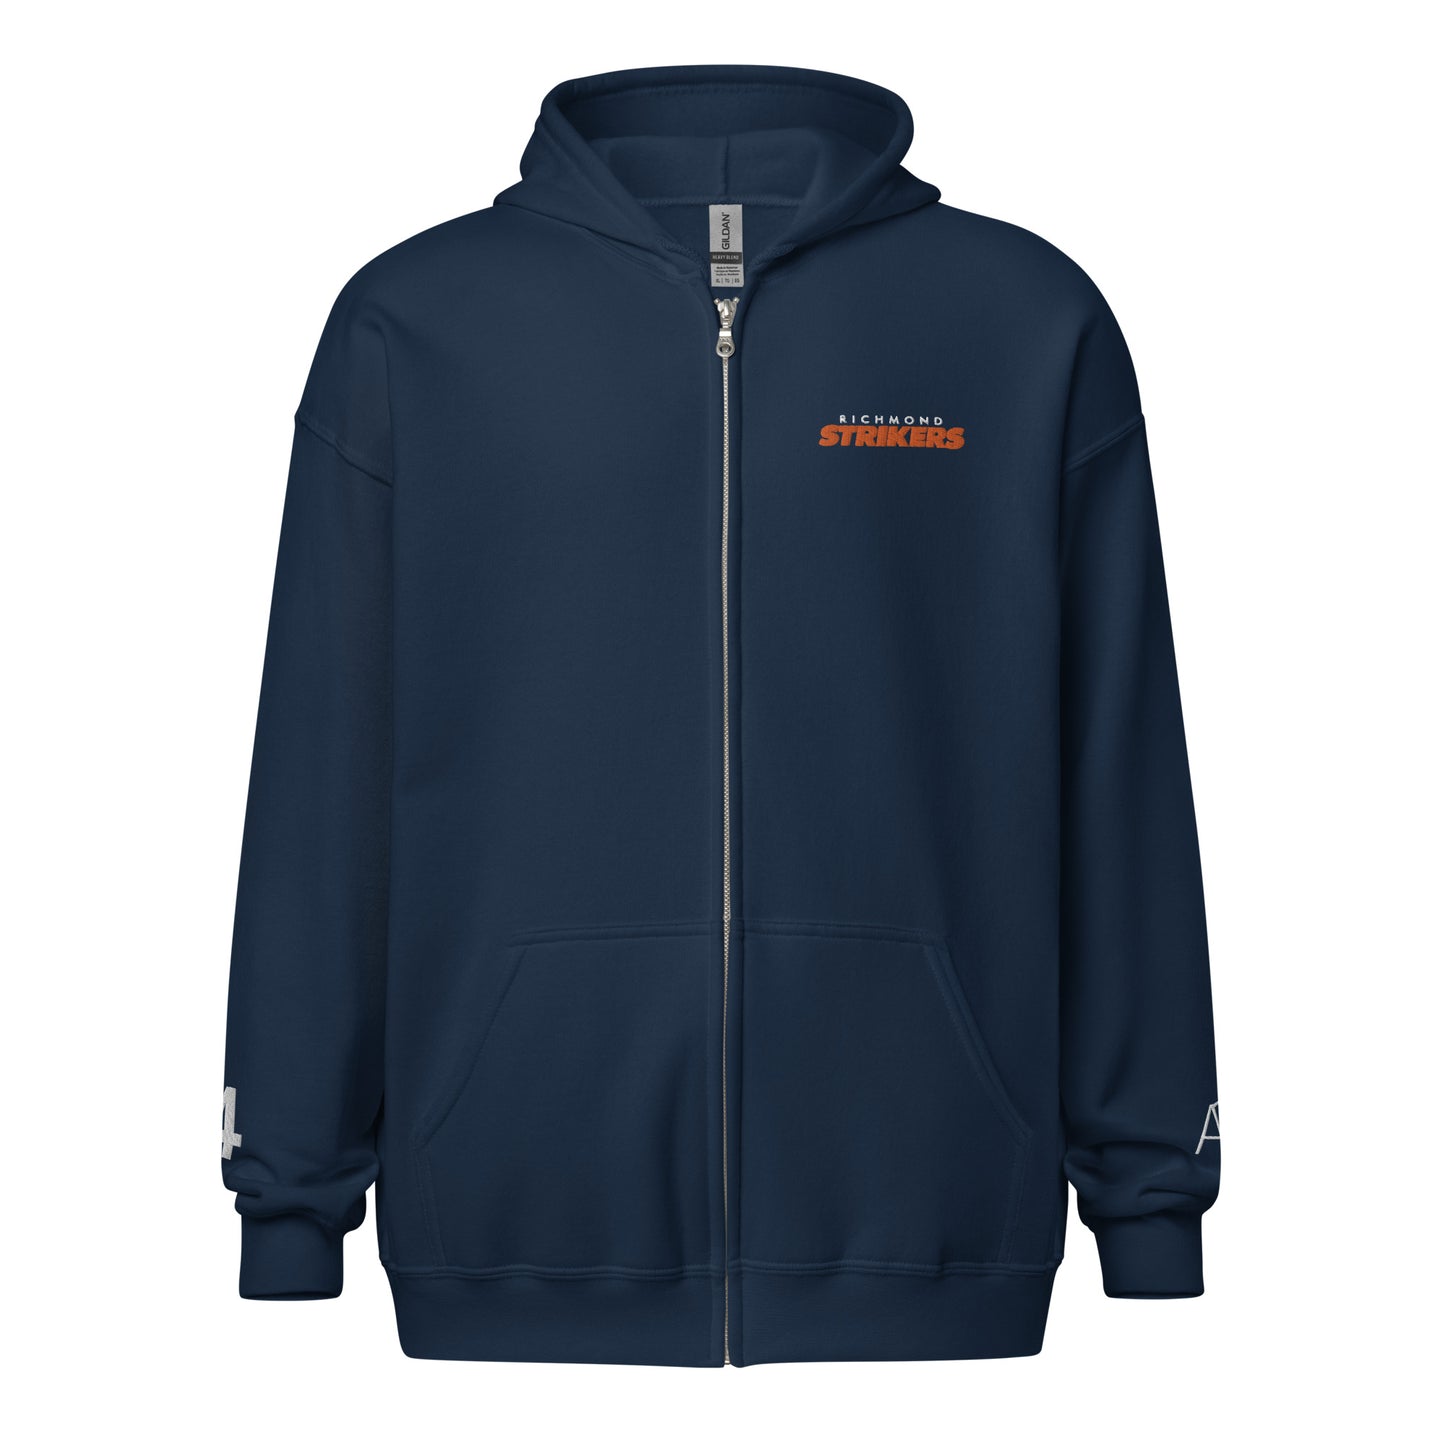 RVA Strikers Unisex heavy blend zip hoodie